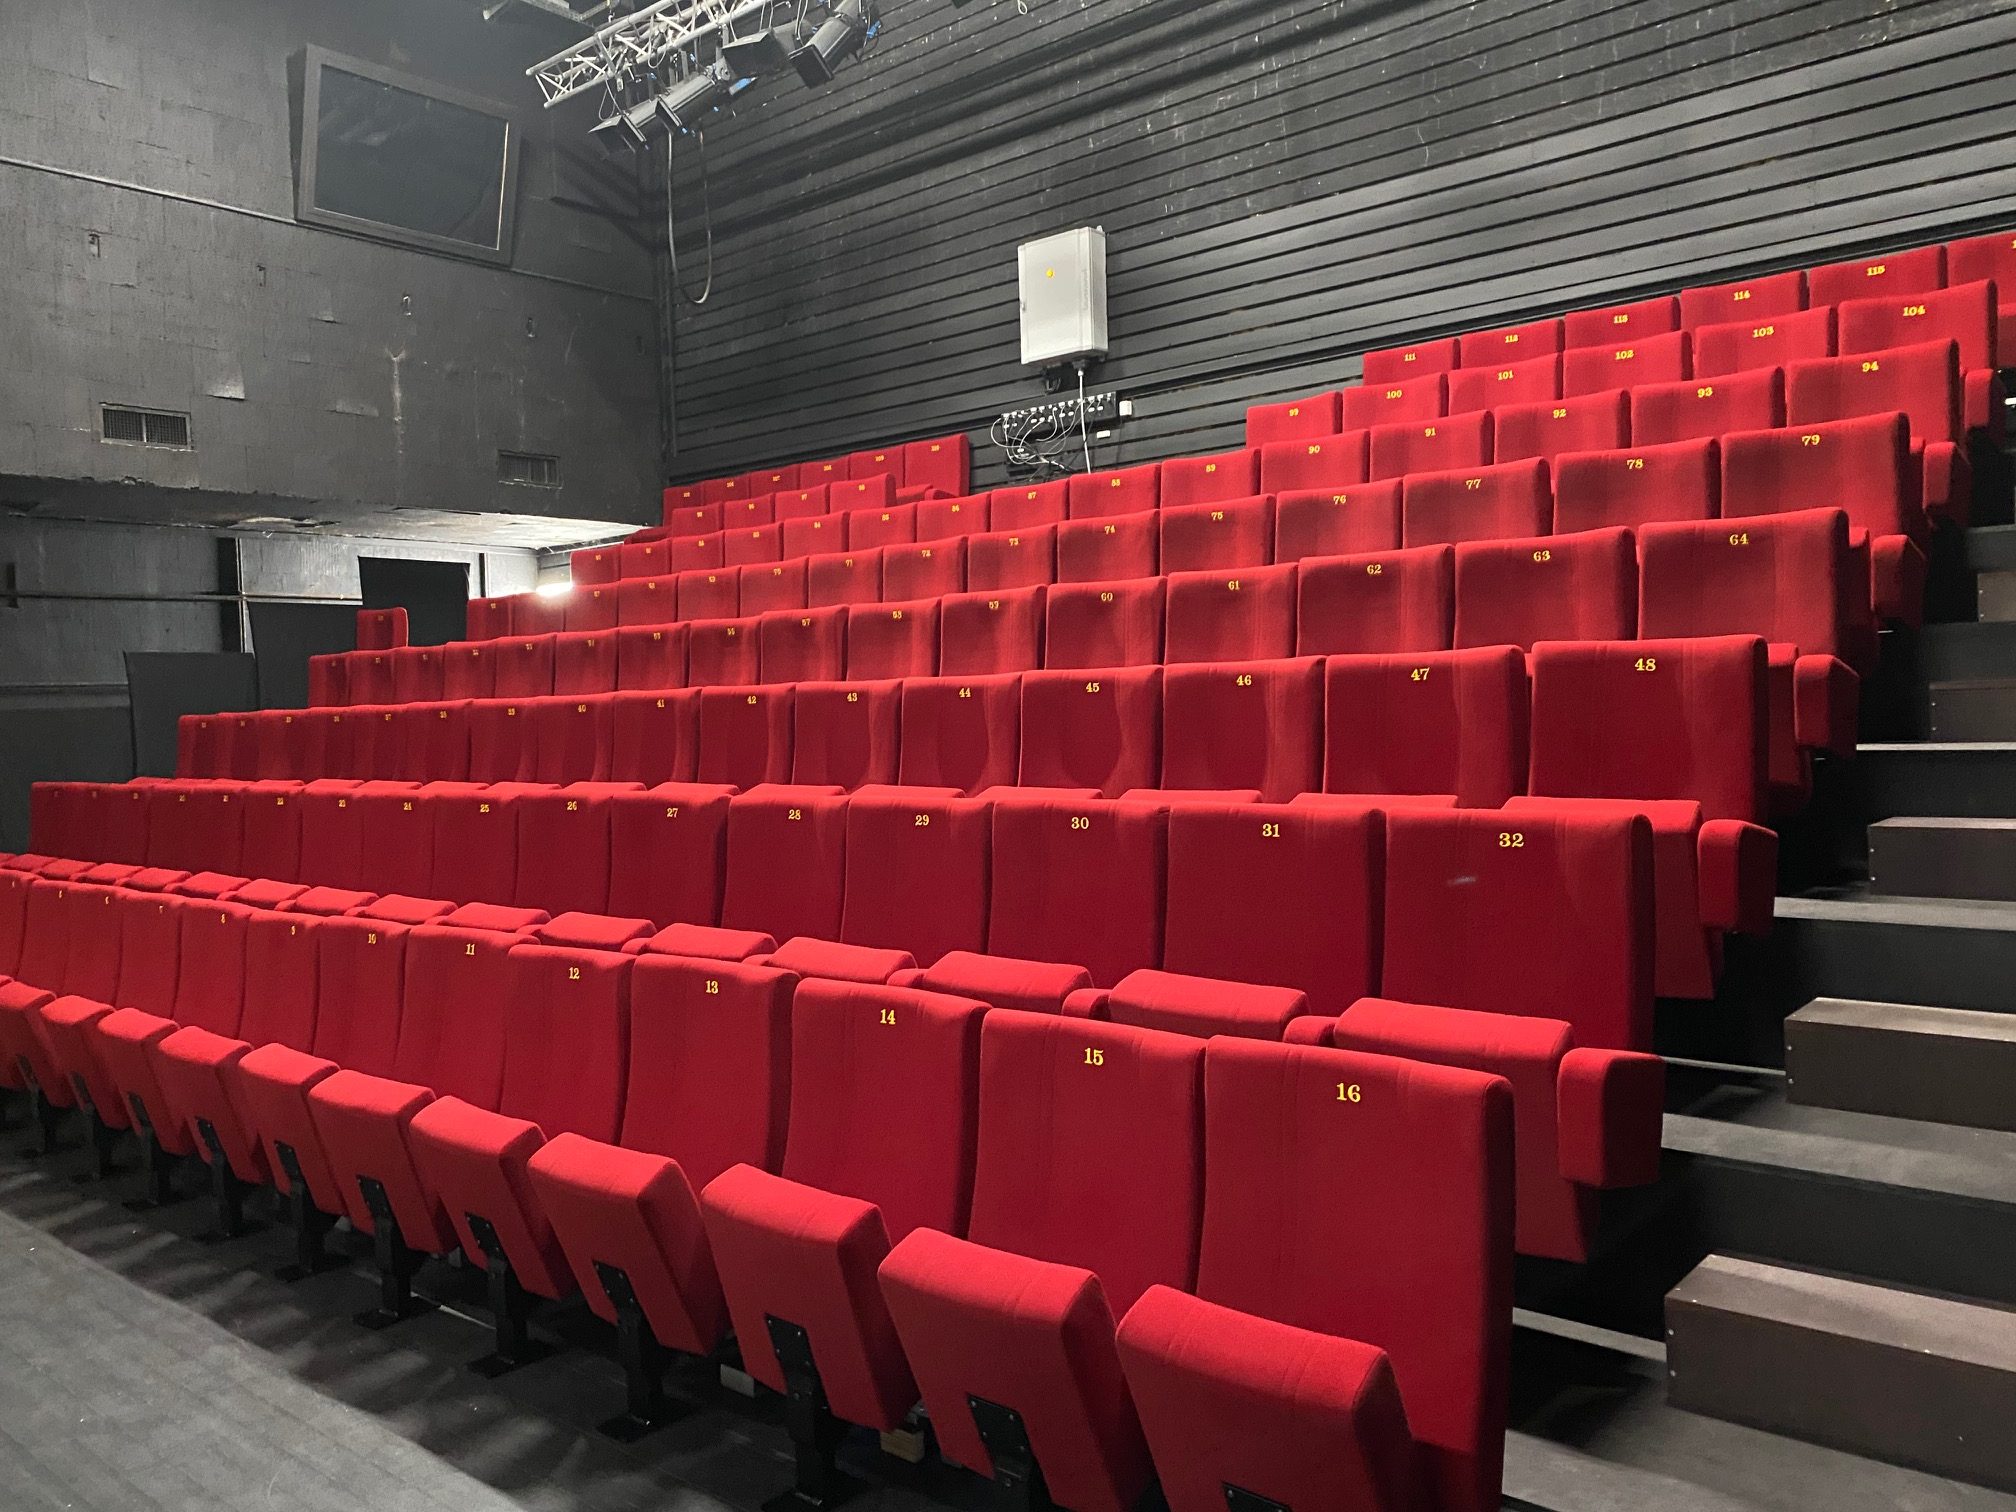 118 fauteuils de théâtre avec numérotation brodée pour le théâtre du Cube Noir à Strasbourg